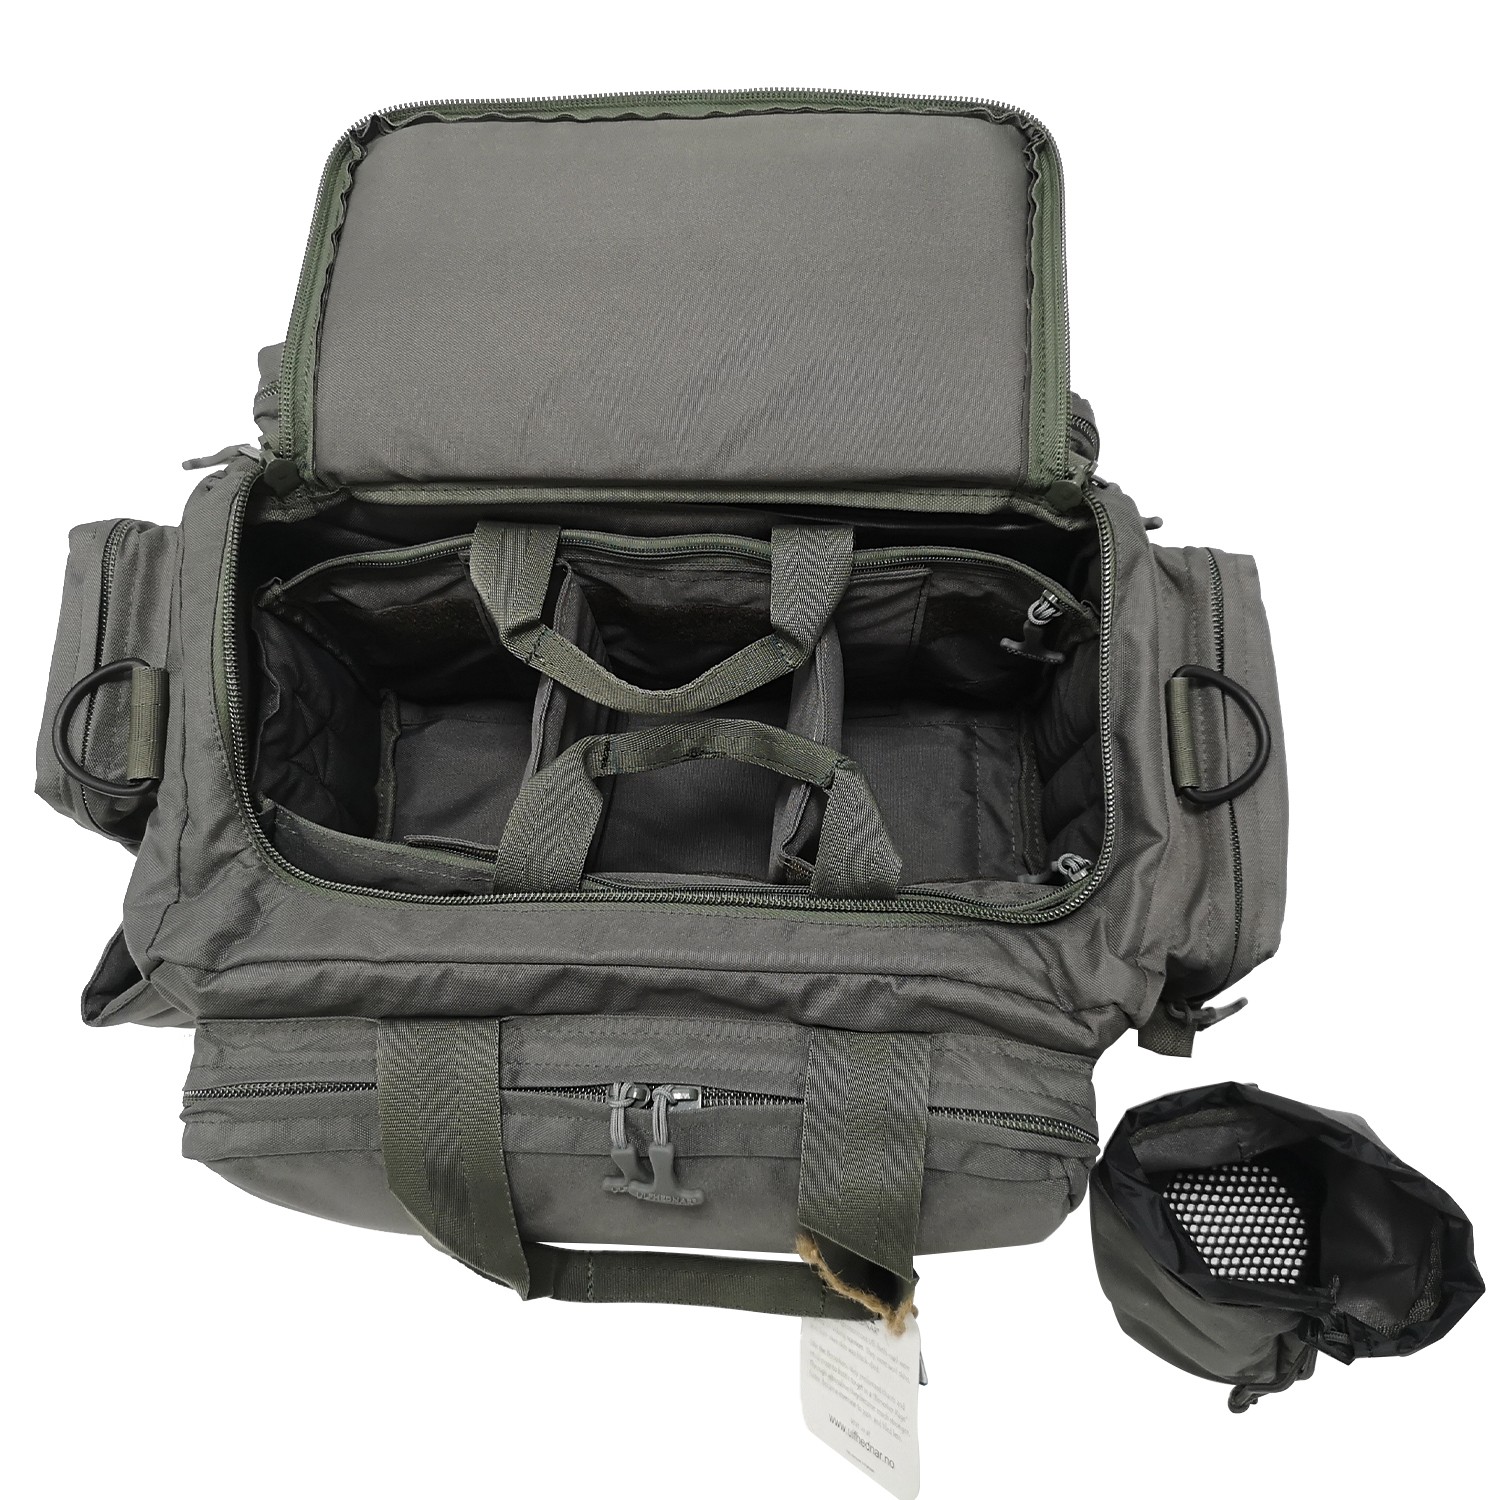 Why Our Range Bag Should Be Your Range Bag – 14er Tactical